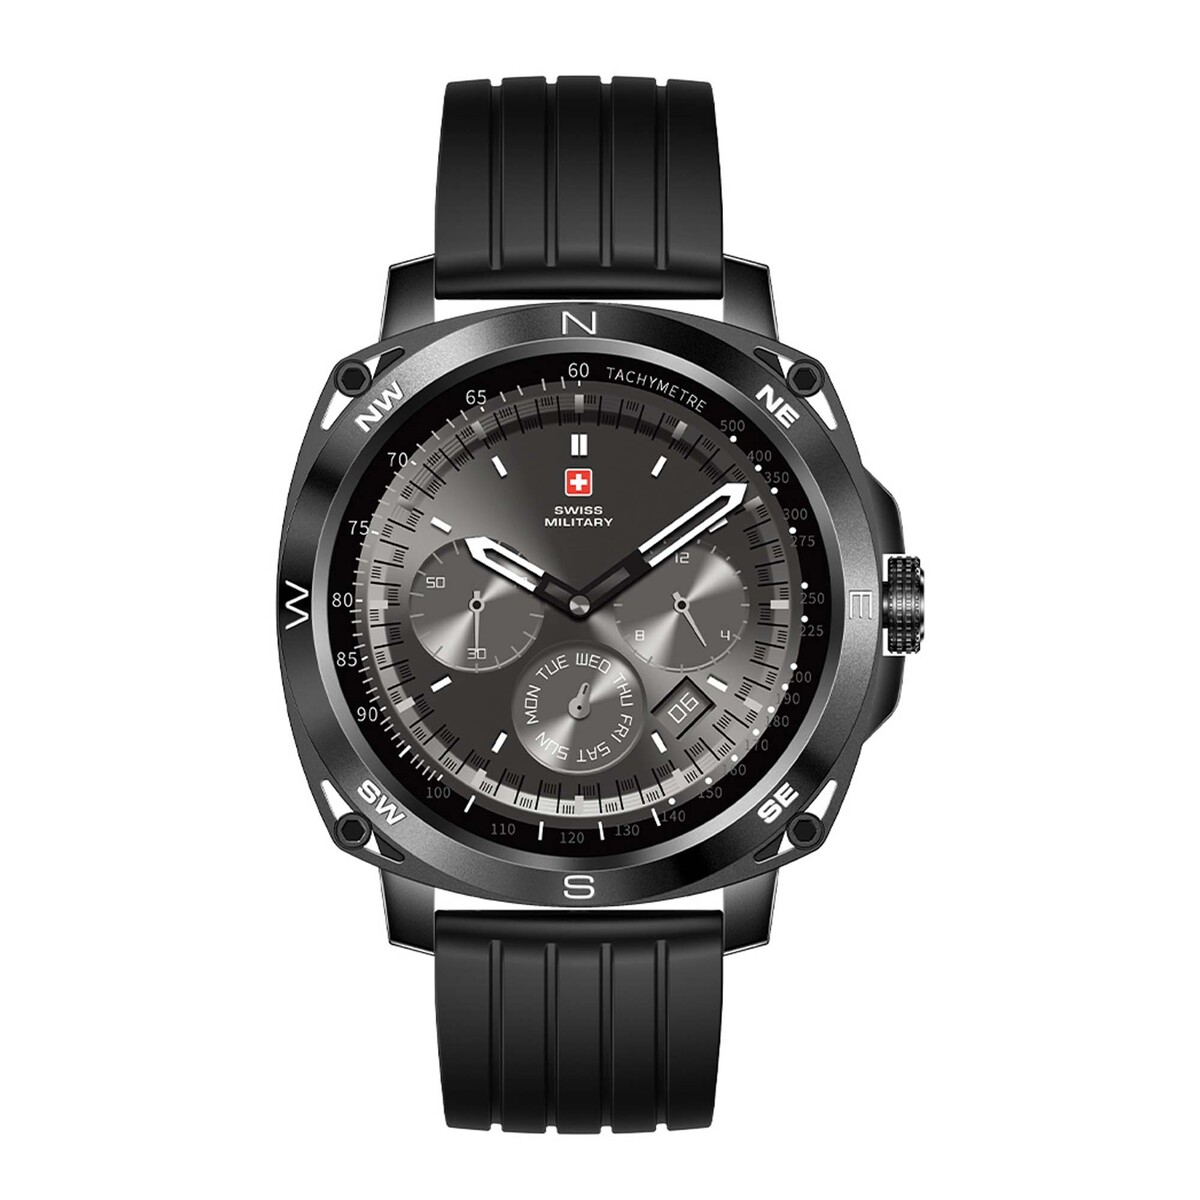 Swiss Military DOM4 Smartwatch Black Silicon